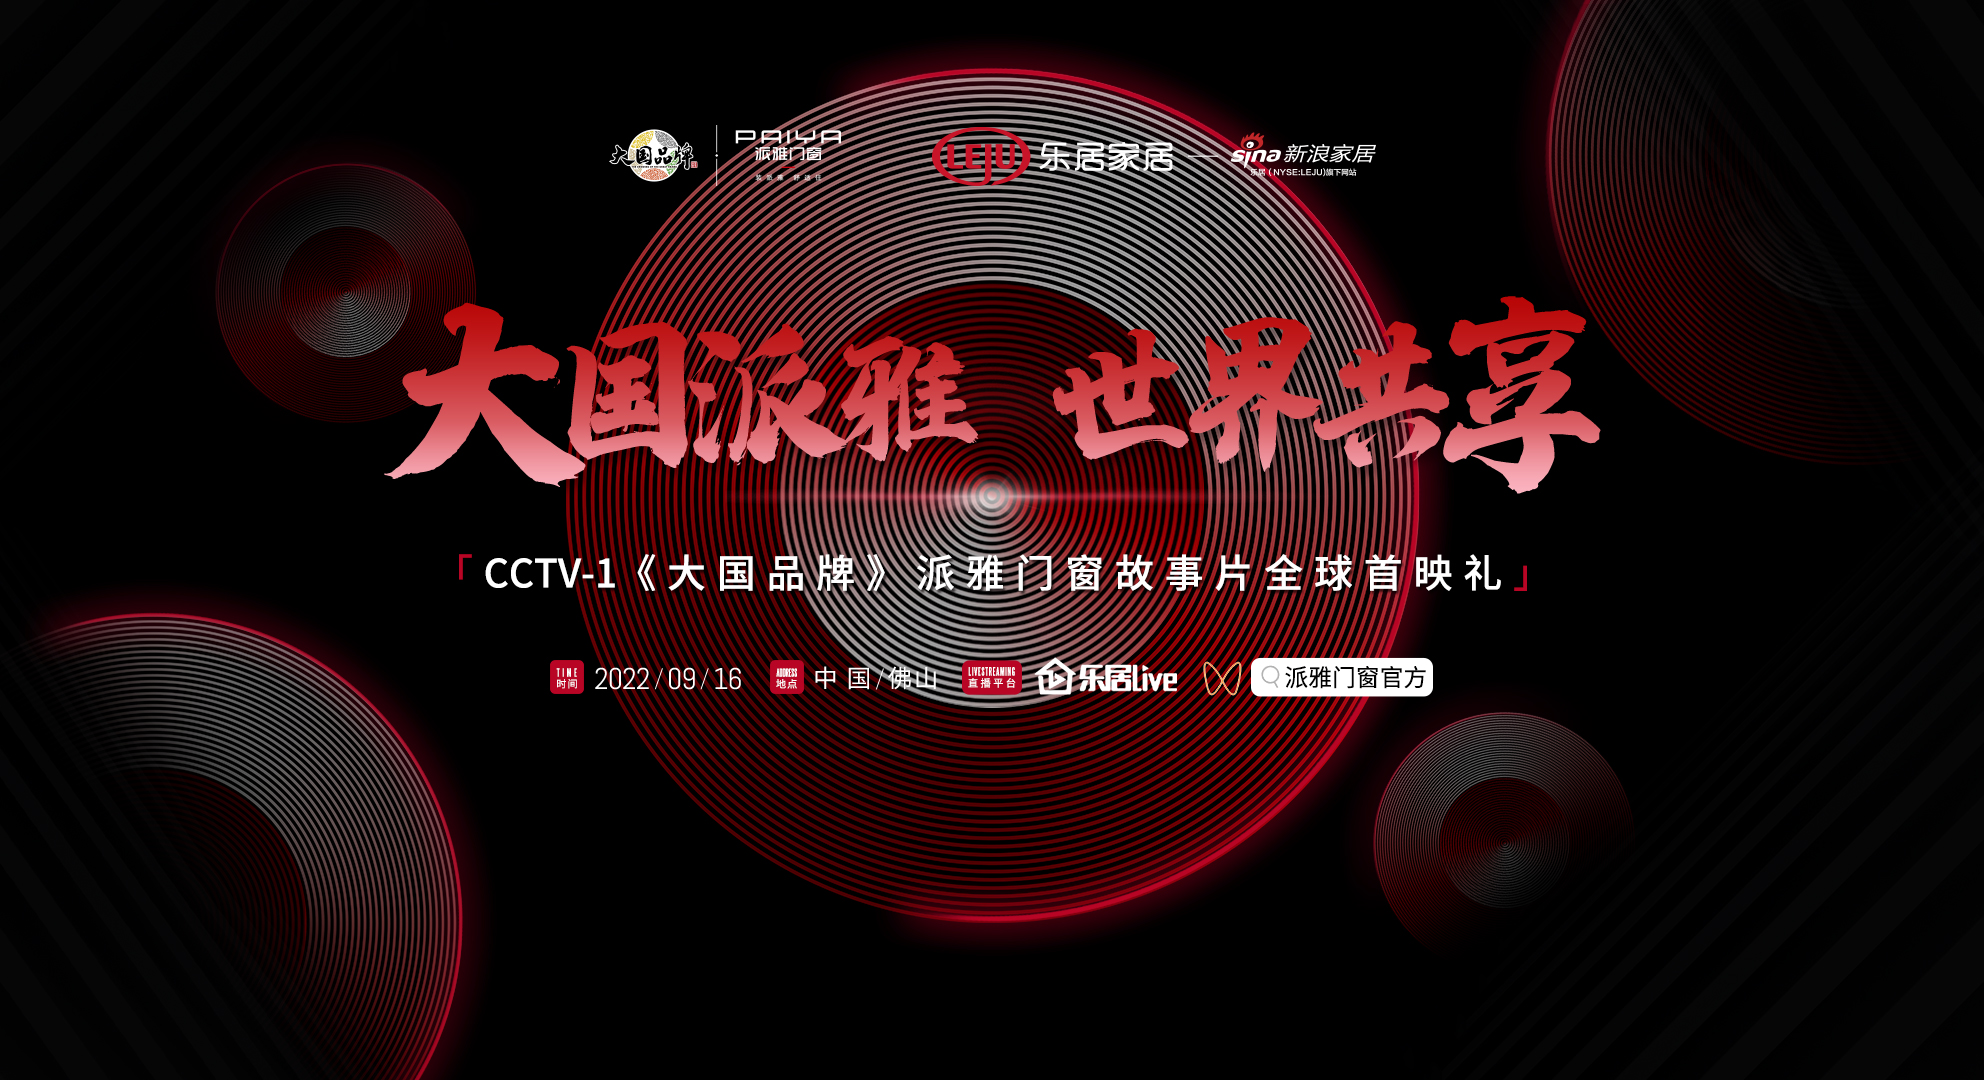 大国派雅 世界共享|CCTV-1《大国品牌》派雅门窗故事片即将上映